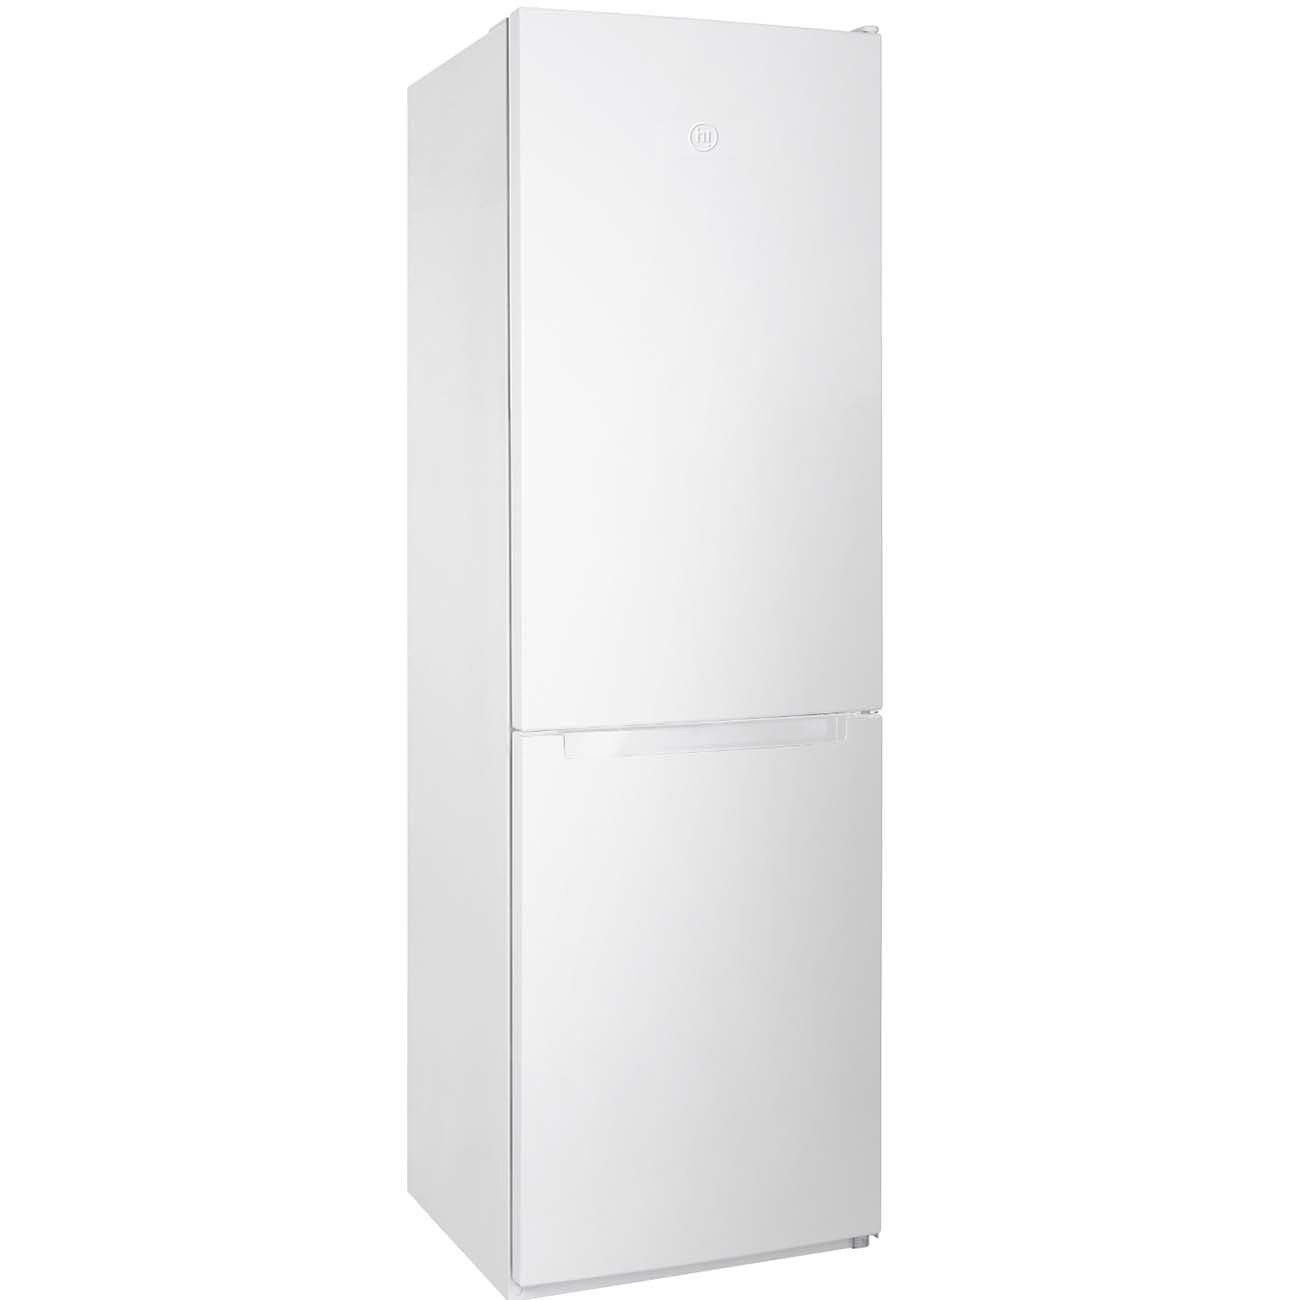 Холодильник Hi HFDN018857DW белый - отзывы покупателей на маркетплейсе Мегамаркет | Артикул: 100062422404